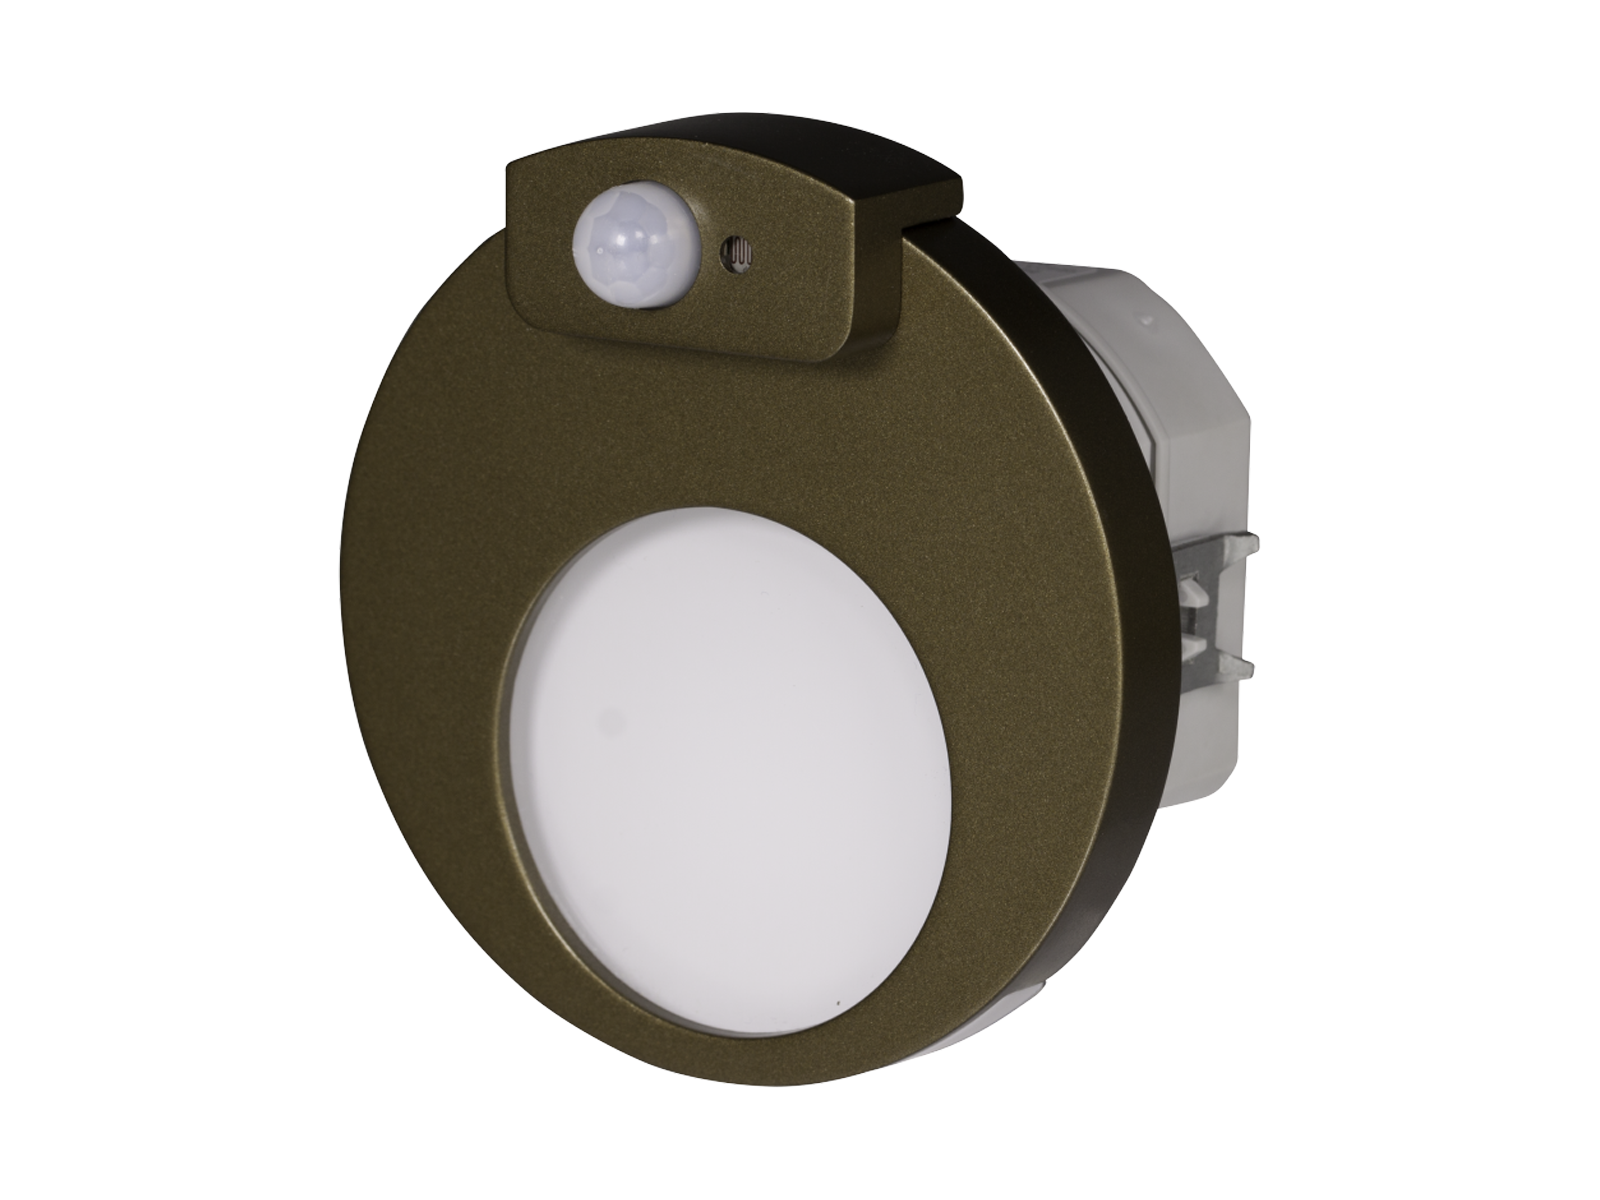 Svítidlo LED se senzorem pod omítku LEDIX MUNA 230 V AC, zlatá patina, neutrální bílá, IP20